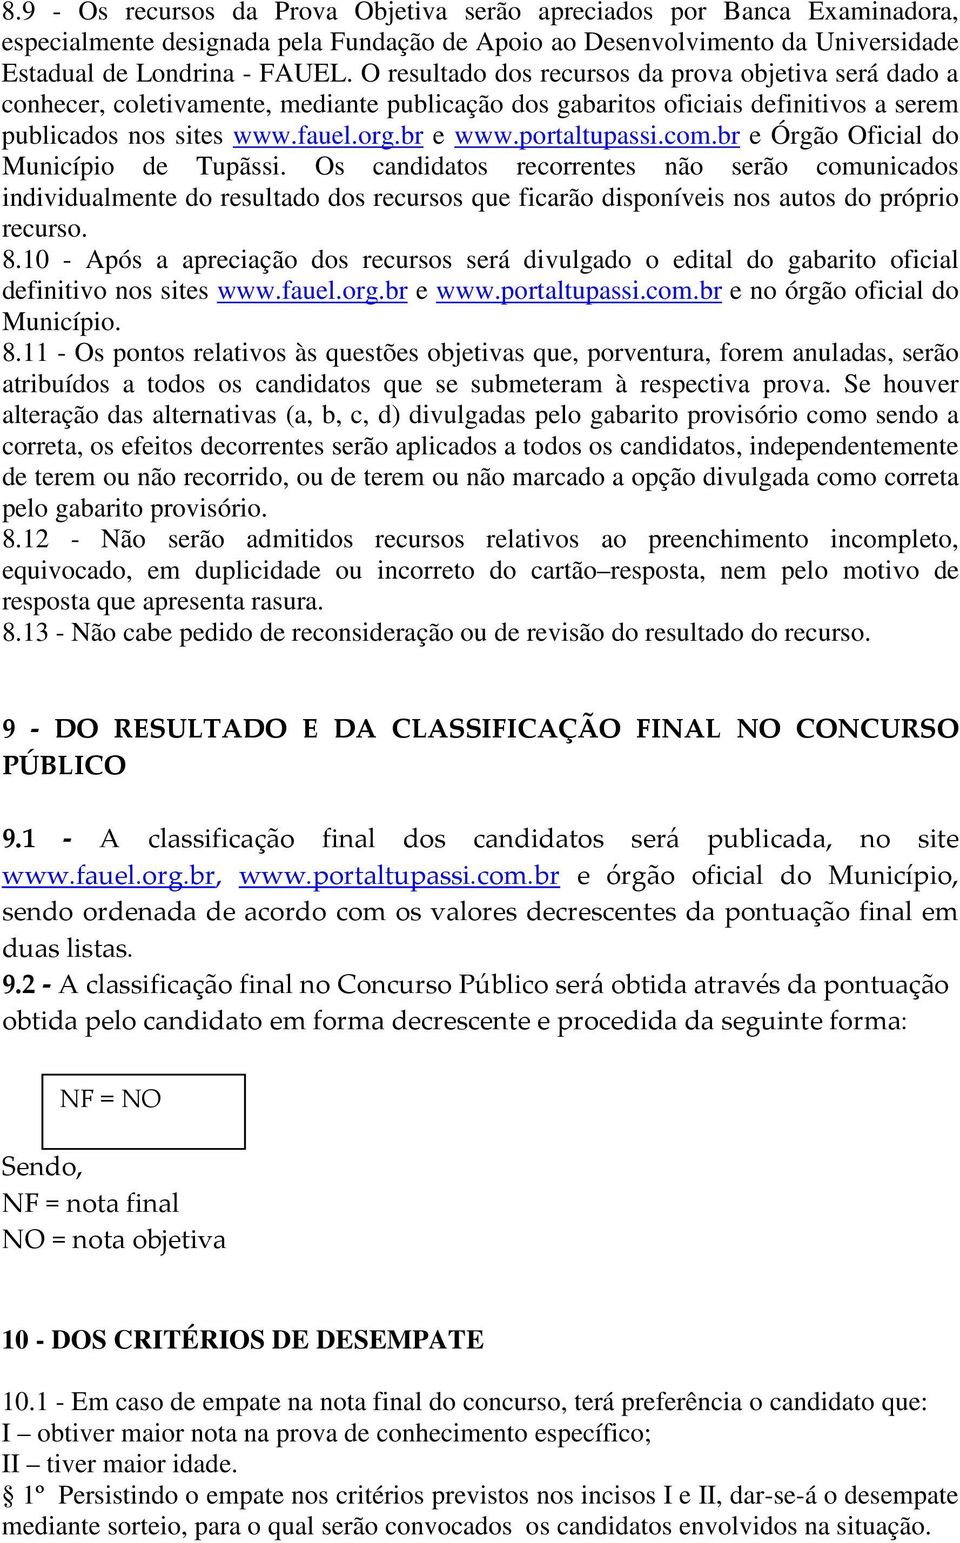 portaltupassi.com.br e Órgão Oficial do Município de Tupãssi.